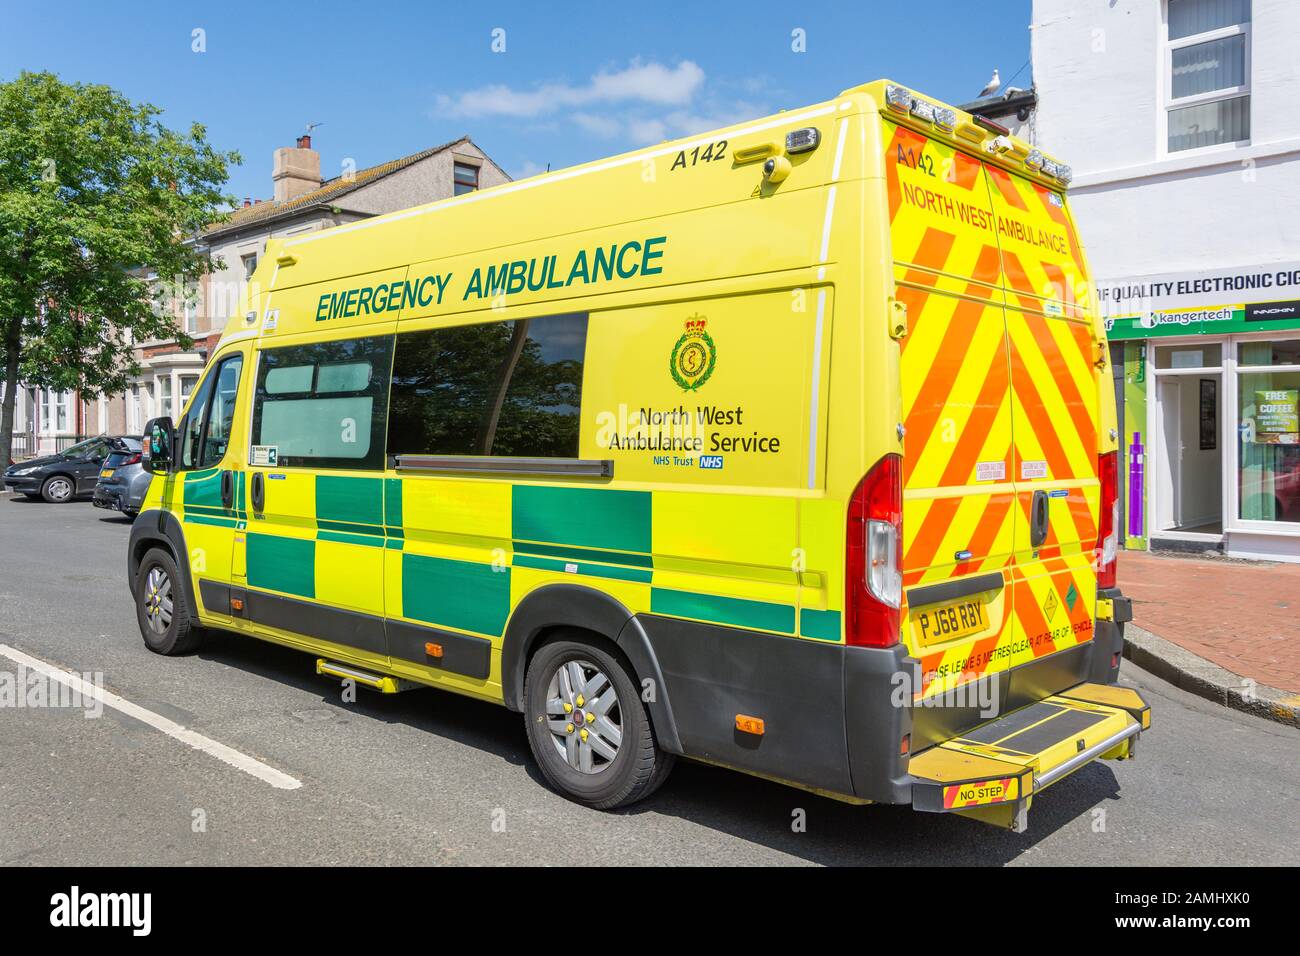 North West Ambulance Service Emergency Ambulance on call, Fleetwood, Lancashire, England, United Kingdom Stock Photo